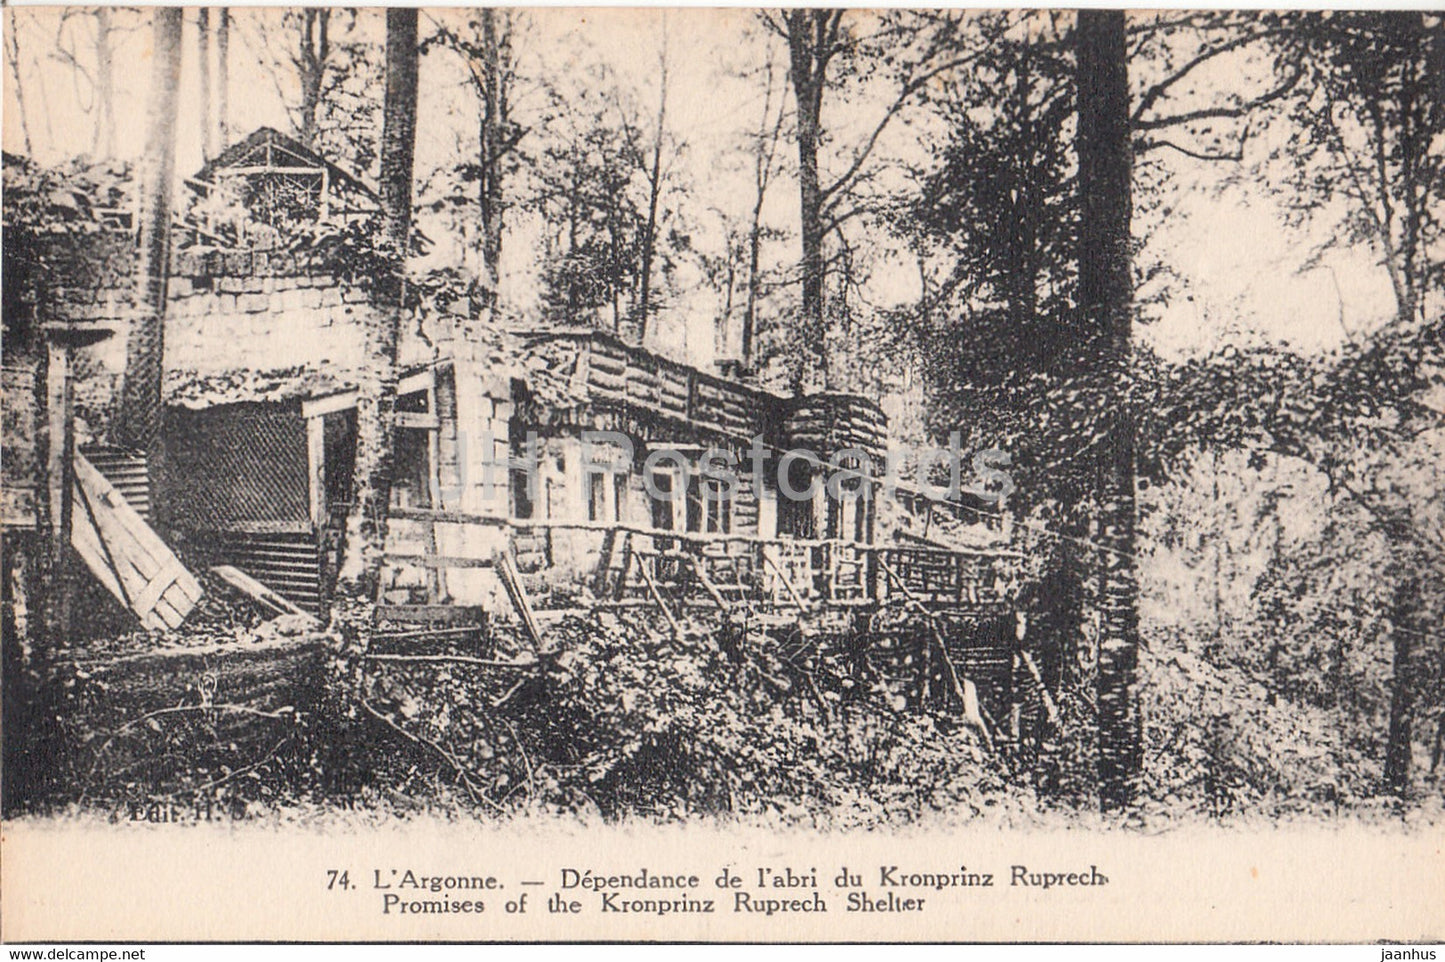 L'Argonne - Dependance de l'abri du Kronprinz Ruprech - 74 - military - WWI - old postcard - France - unused - JH Postcards